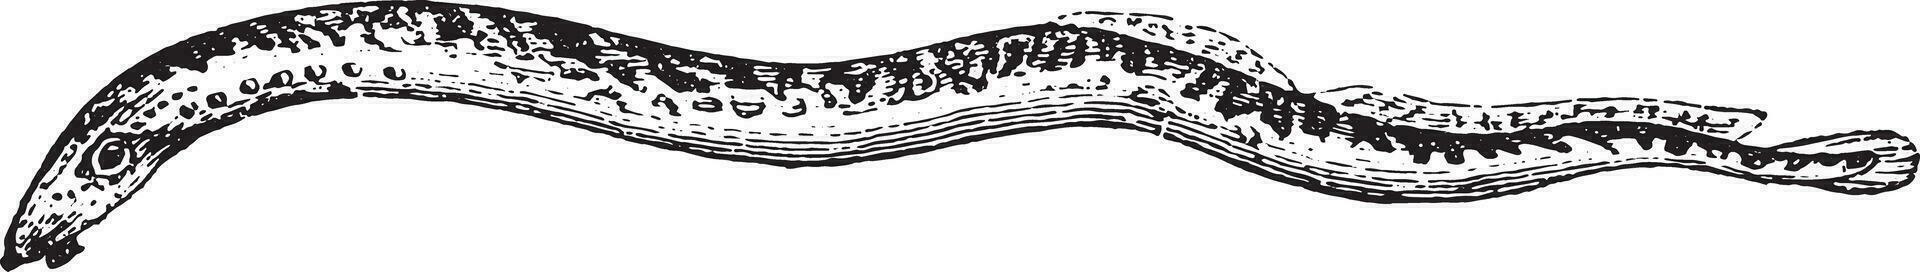 lamprea, Clásico grabado. vector